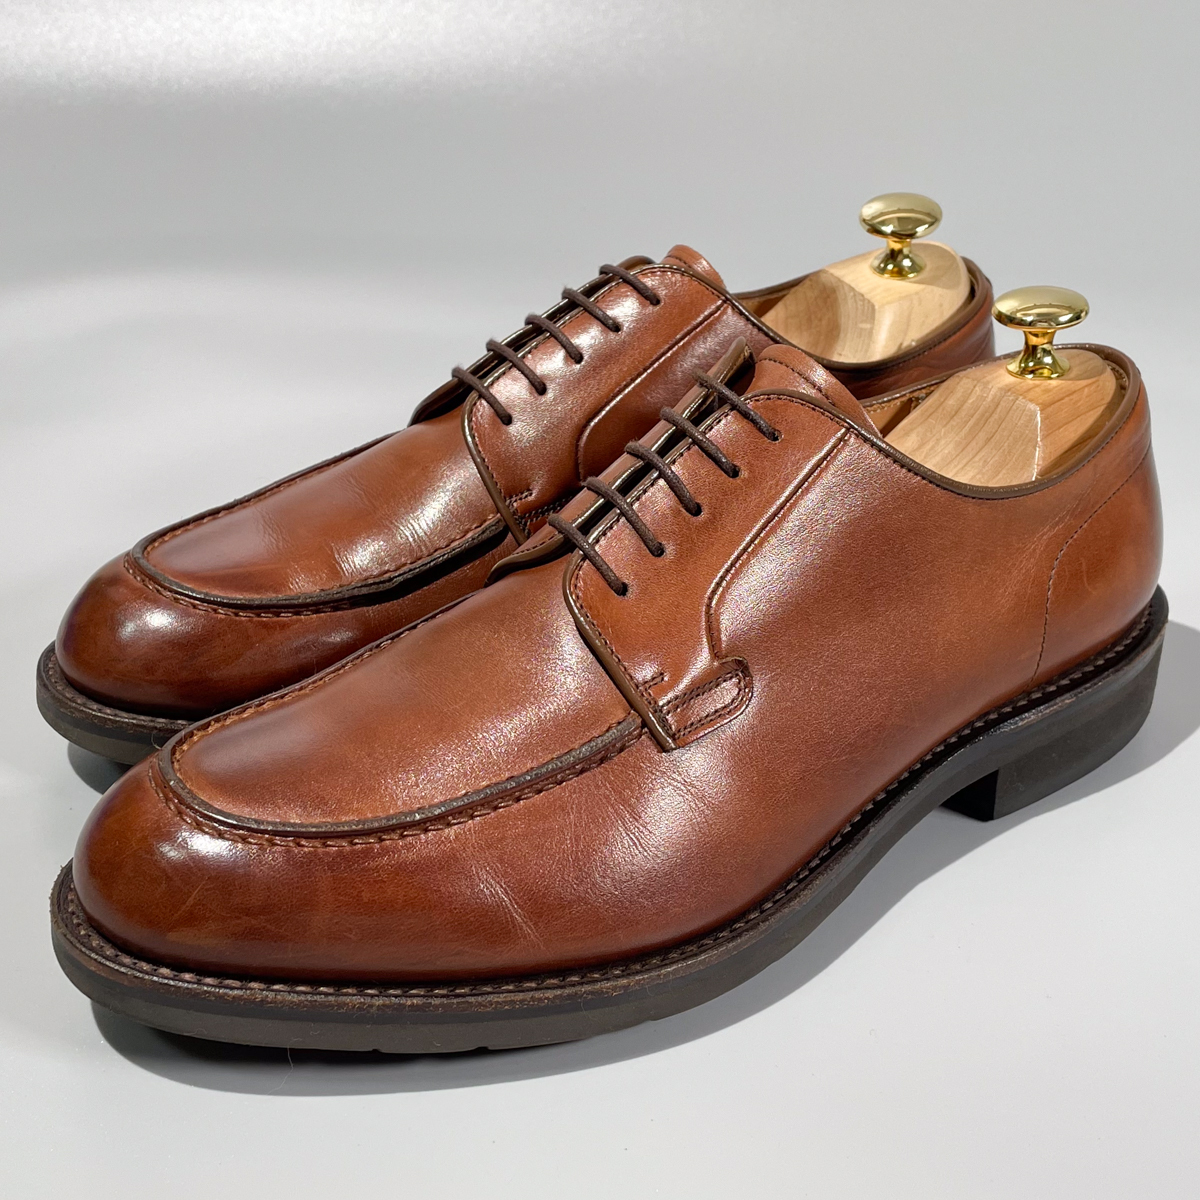 即決 REGAL リーガル Uチップ 外羽根式 ブラウン 茶色 メンズ 本革 レザー 革靴 25cm ビジネスシューズ 紳士靴 フォーマル A1896_画像1